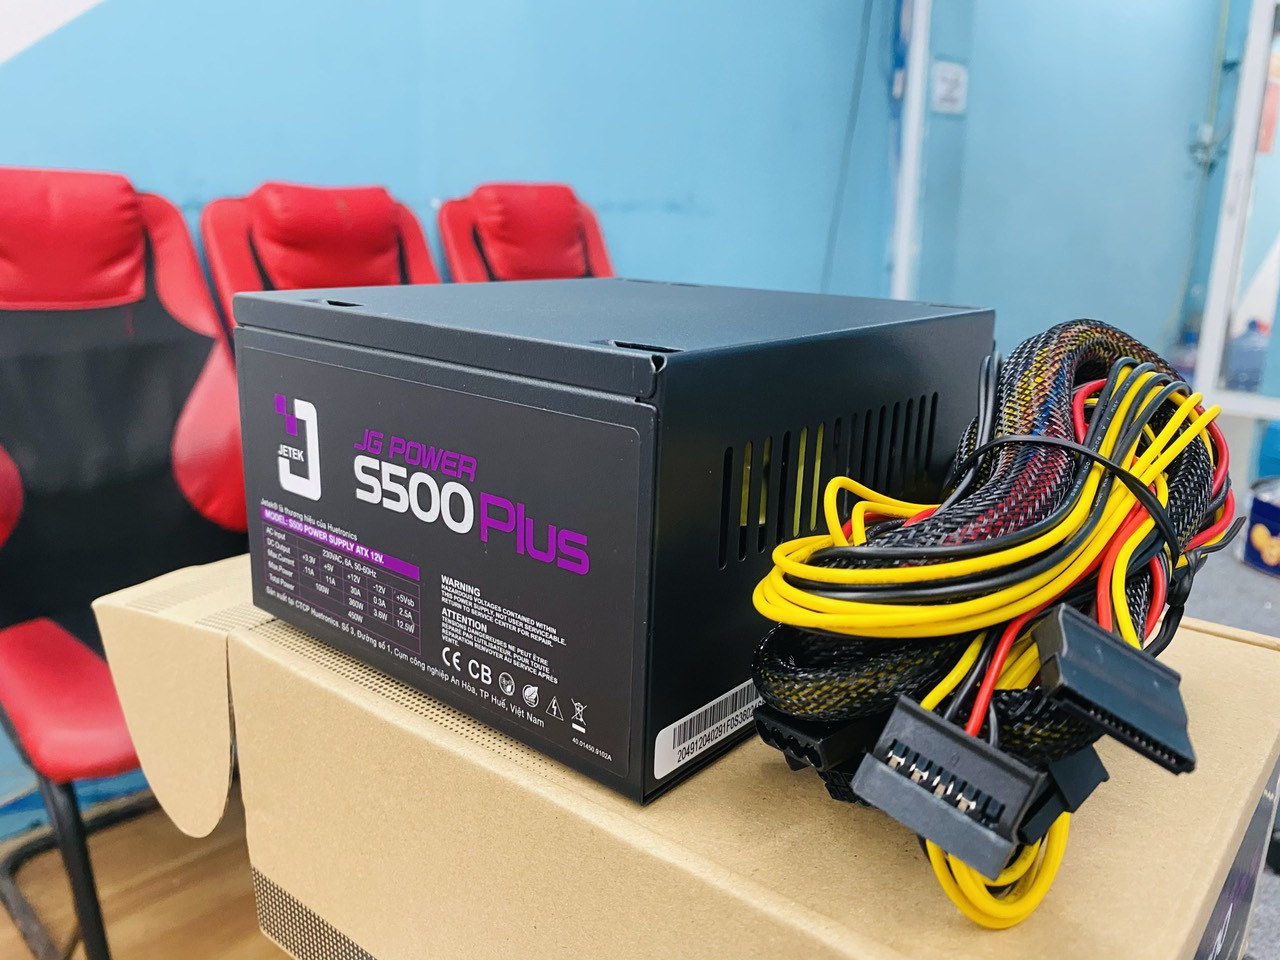 Nguồn Jetek S500 full box